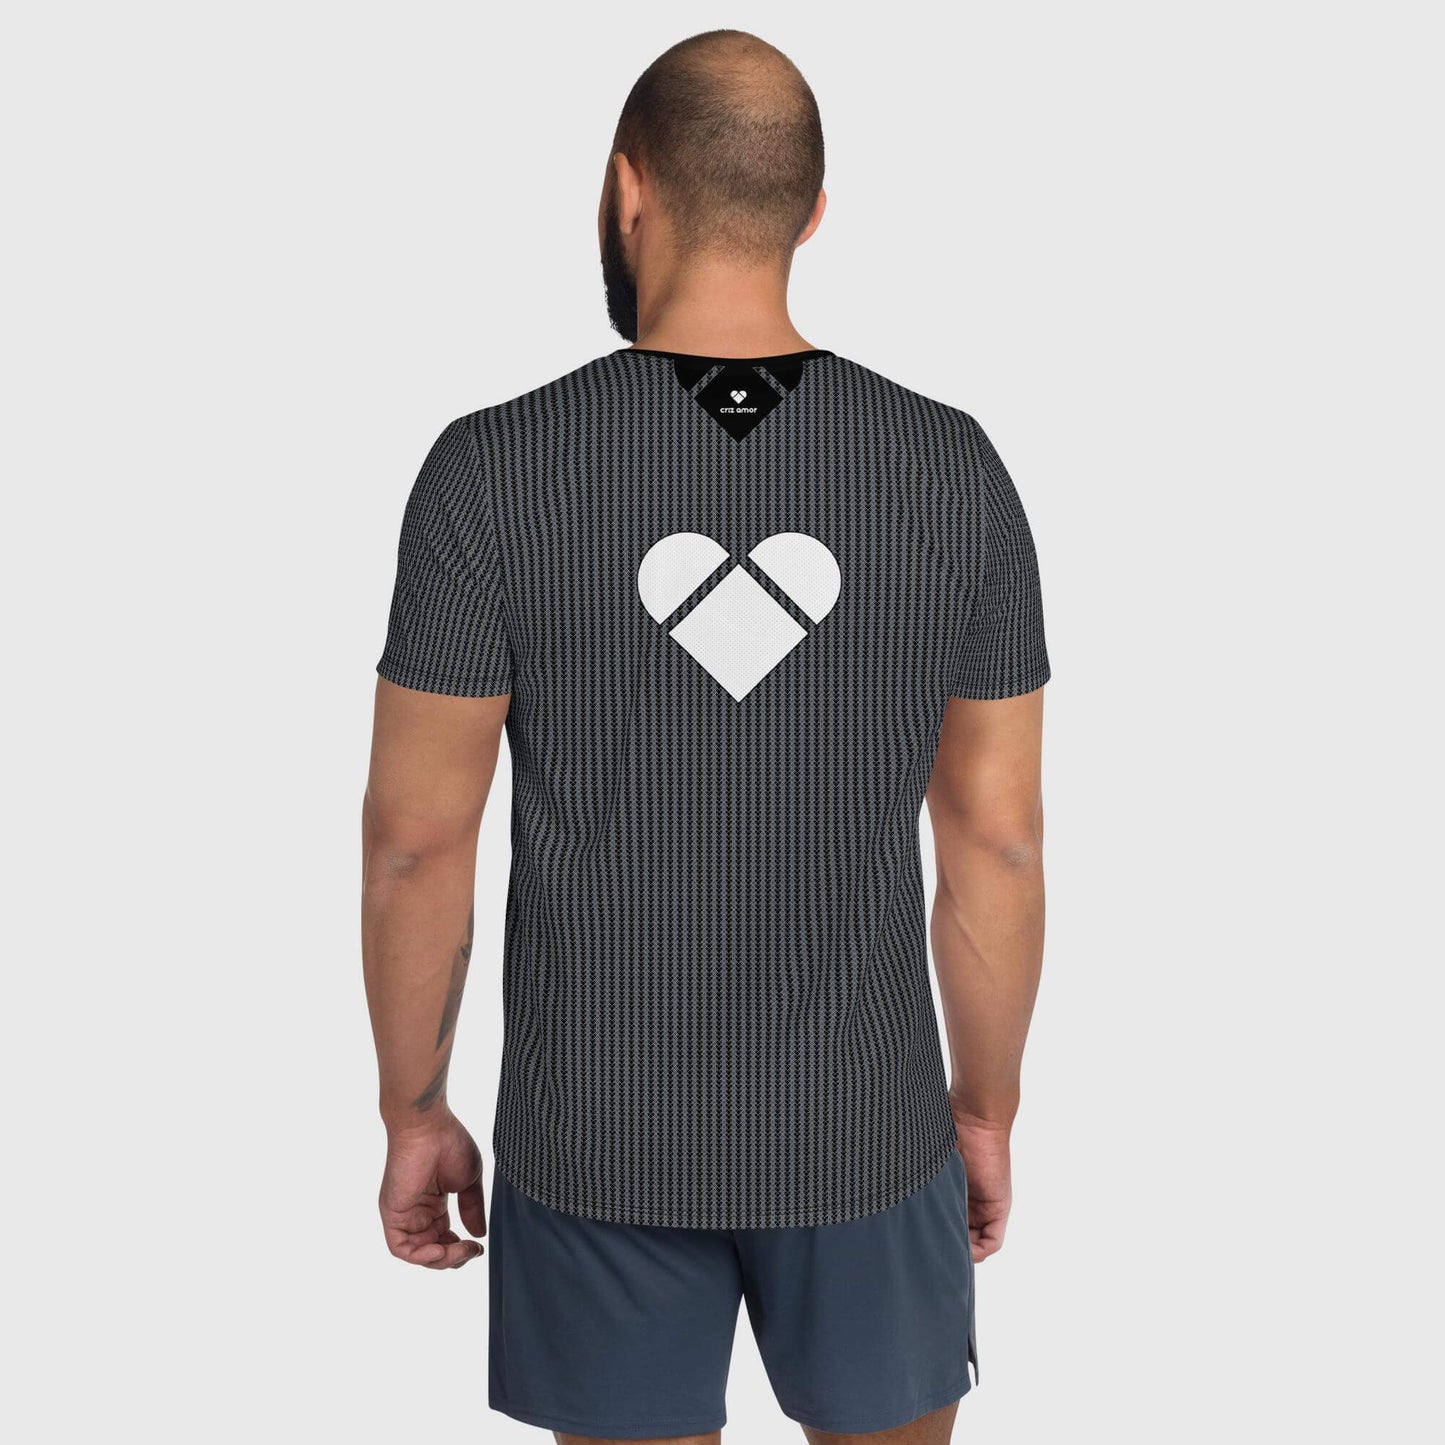 back Men's sportswear with heart design